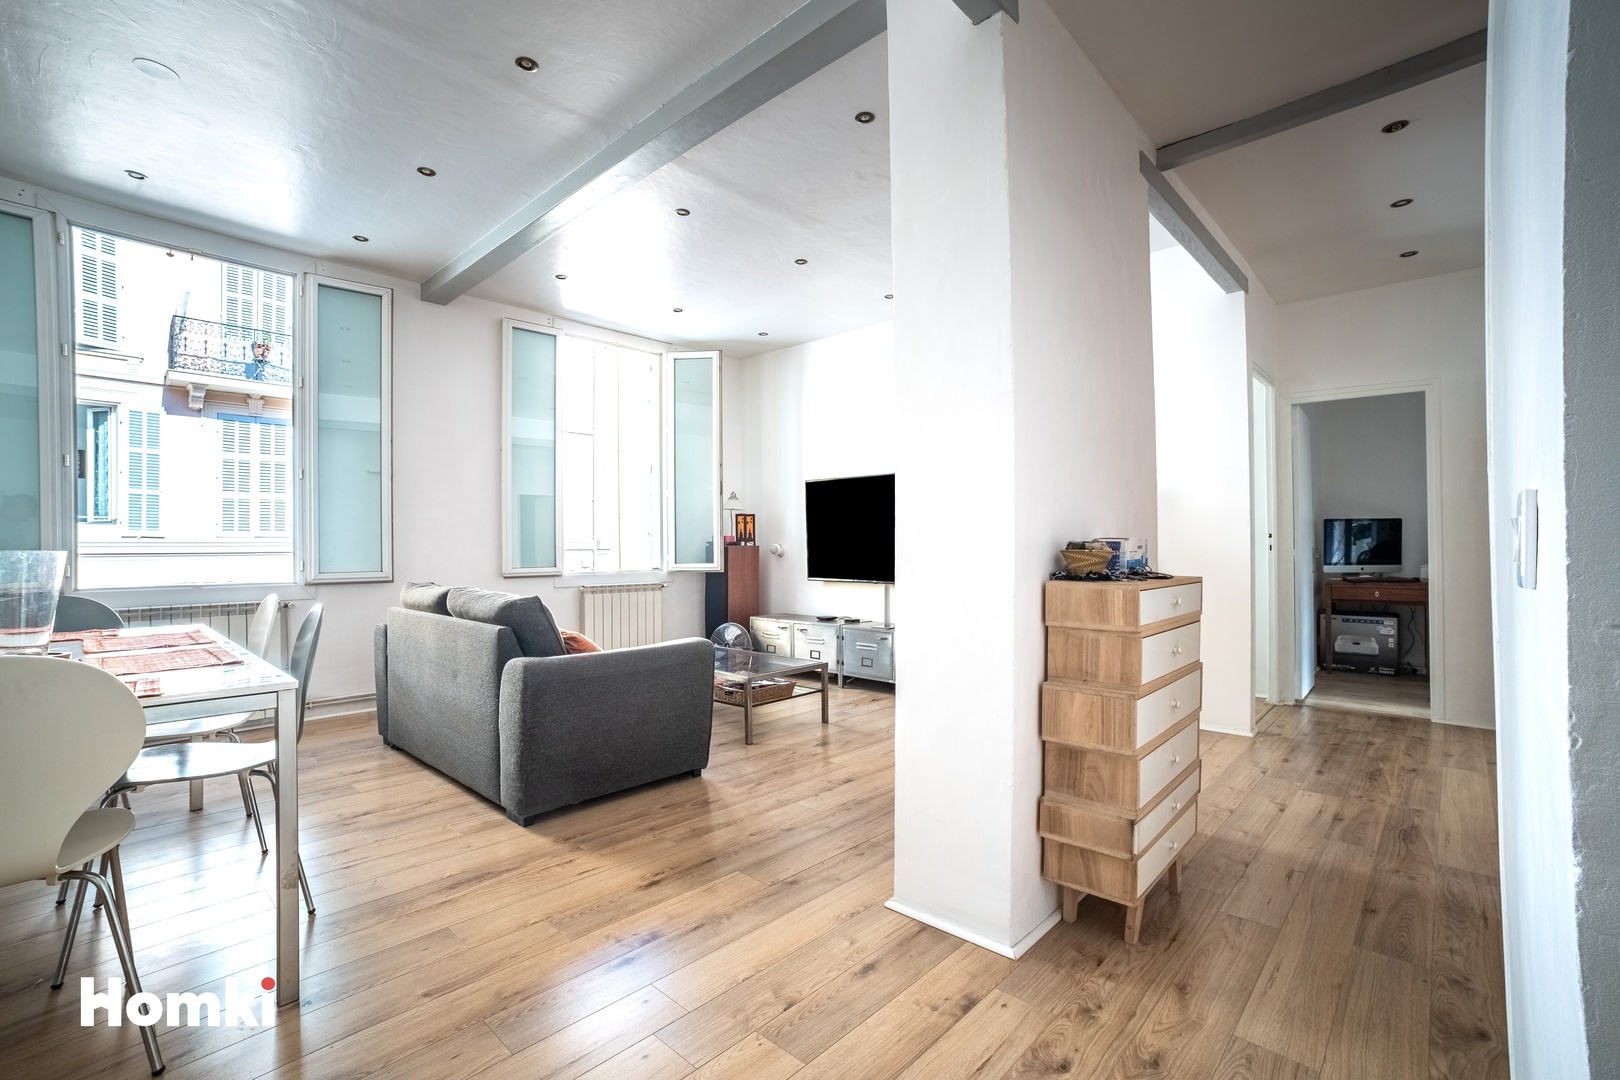 Homki - Vente Appartement  de 85.0 m² à Cannes La Bocca 06150